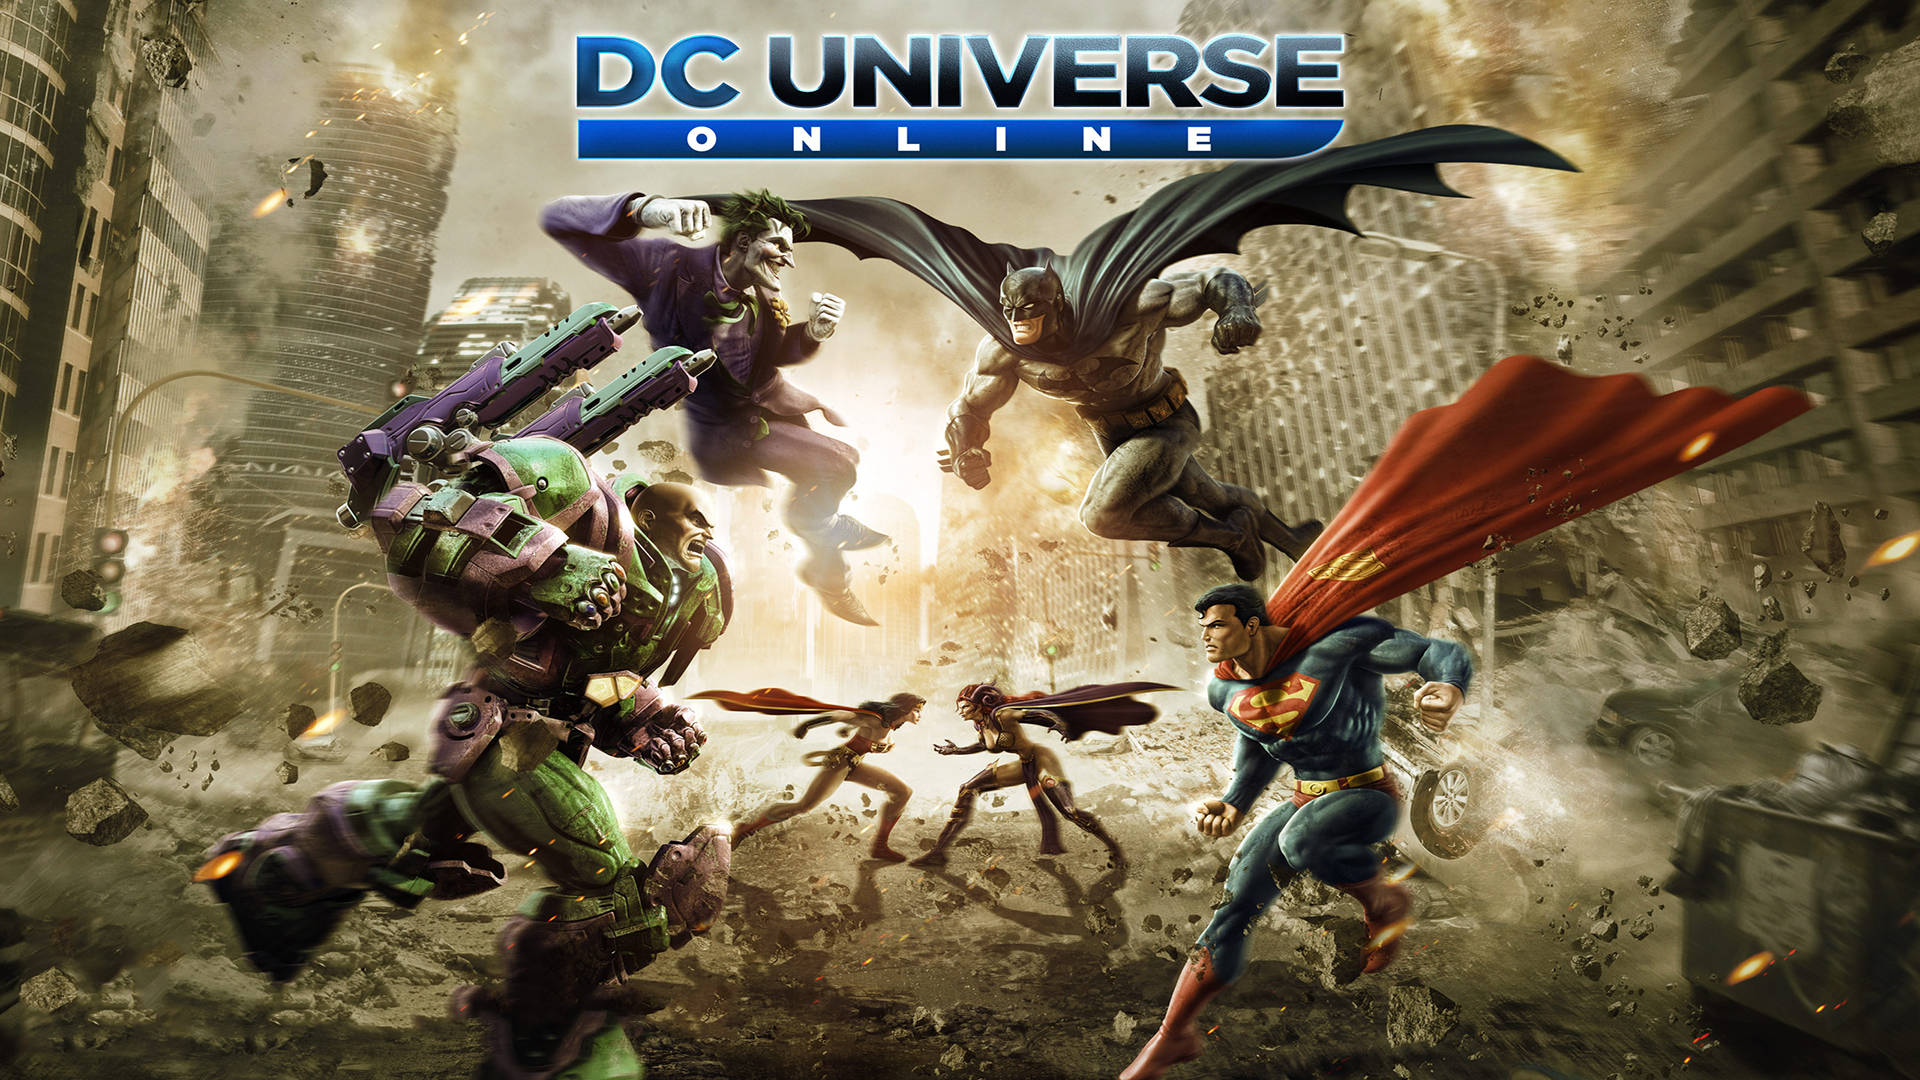 Spil DC Universe Online helte mod skurke på tapetet. Wallpaper